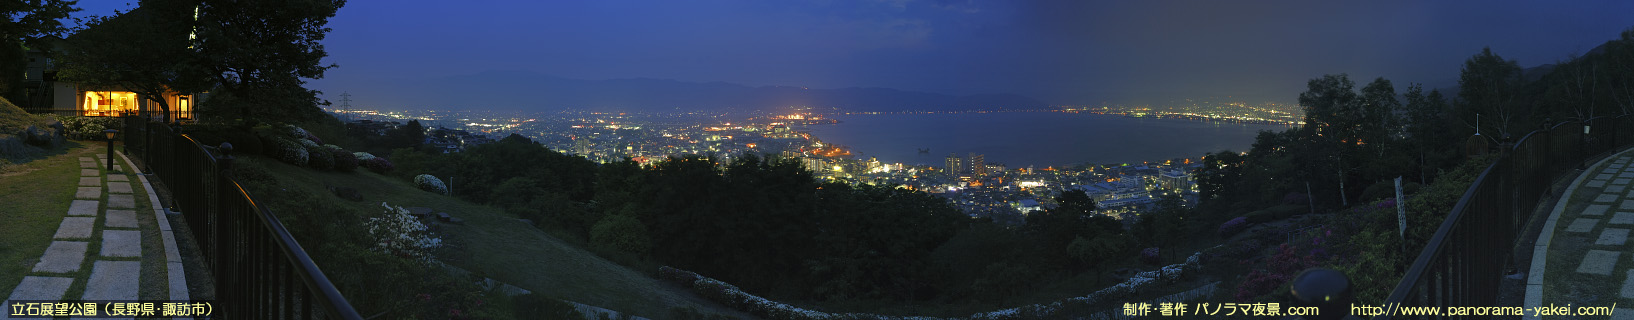 立石公園「展望テラス」からのパノラマ夜景写真（日没直後）～諏訪湖と諏訪市街の夜景～